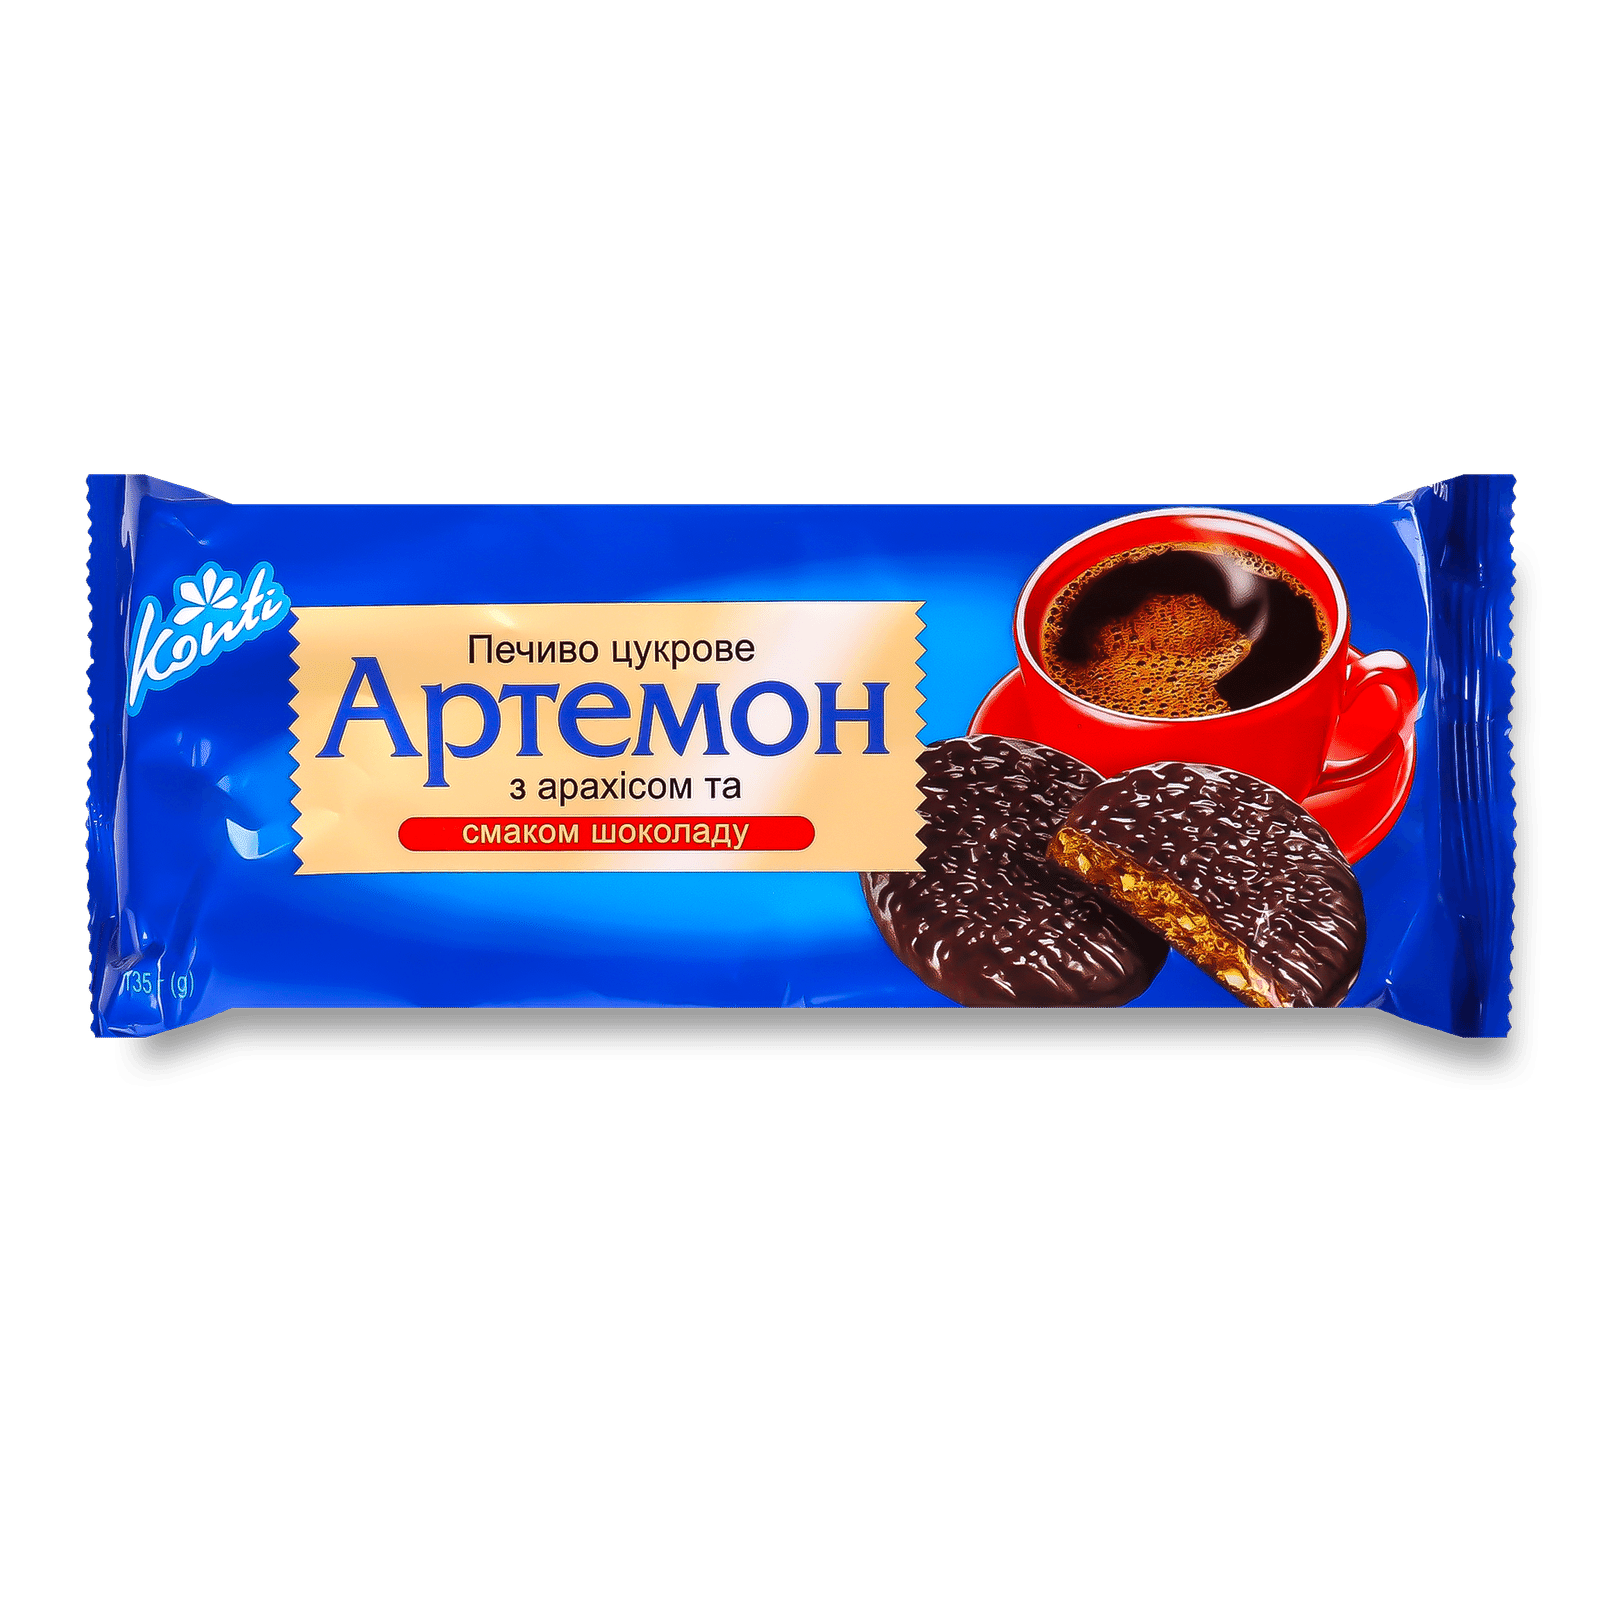 Печиво Konti «Артемон» арахіс-смак шоколаду цукрове - 1